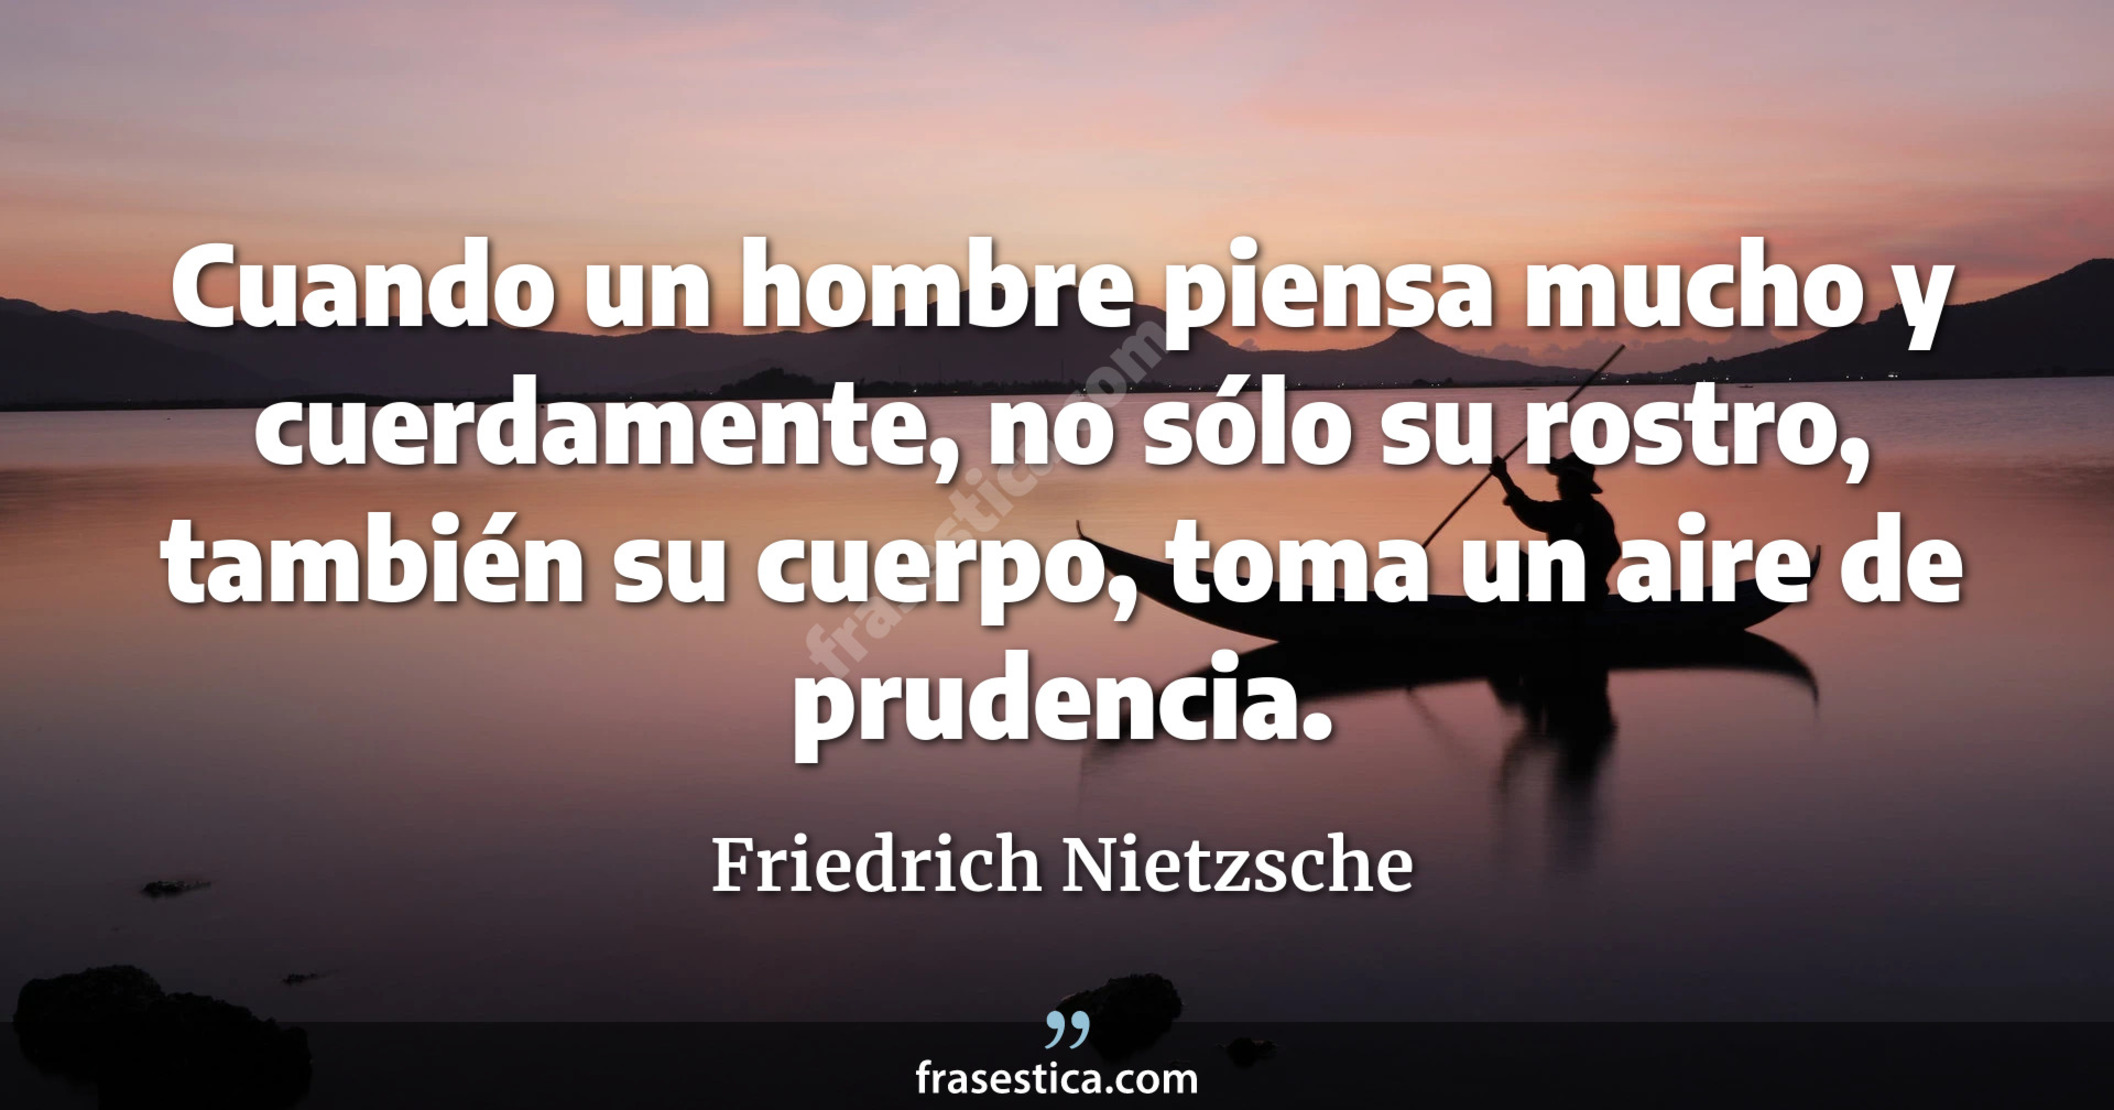 Cuando un hombre piensa mucho y cuerdamente, no sólo su rostro, también su cuerpo, toma un aire de prudencia. - Friedrich Nietzsche